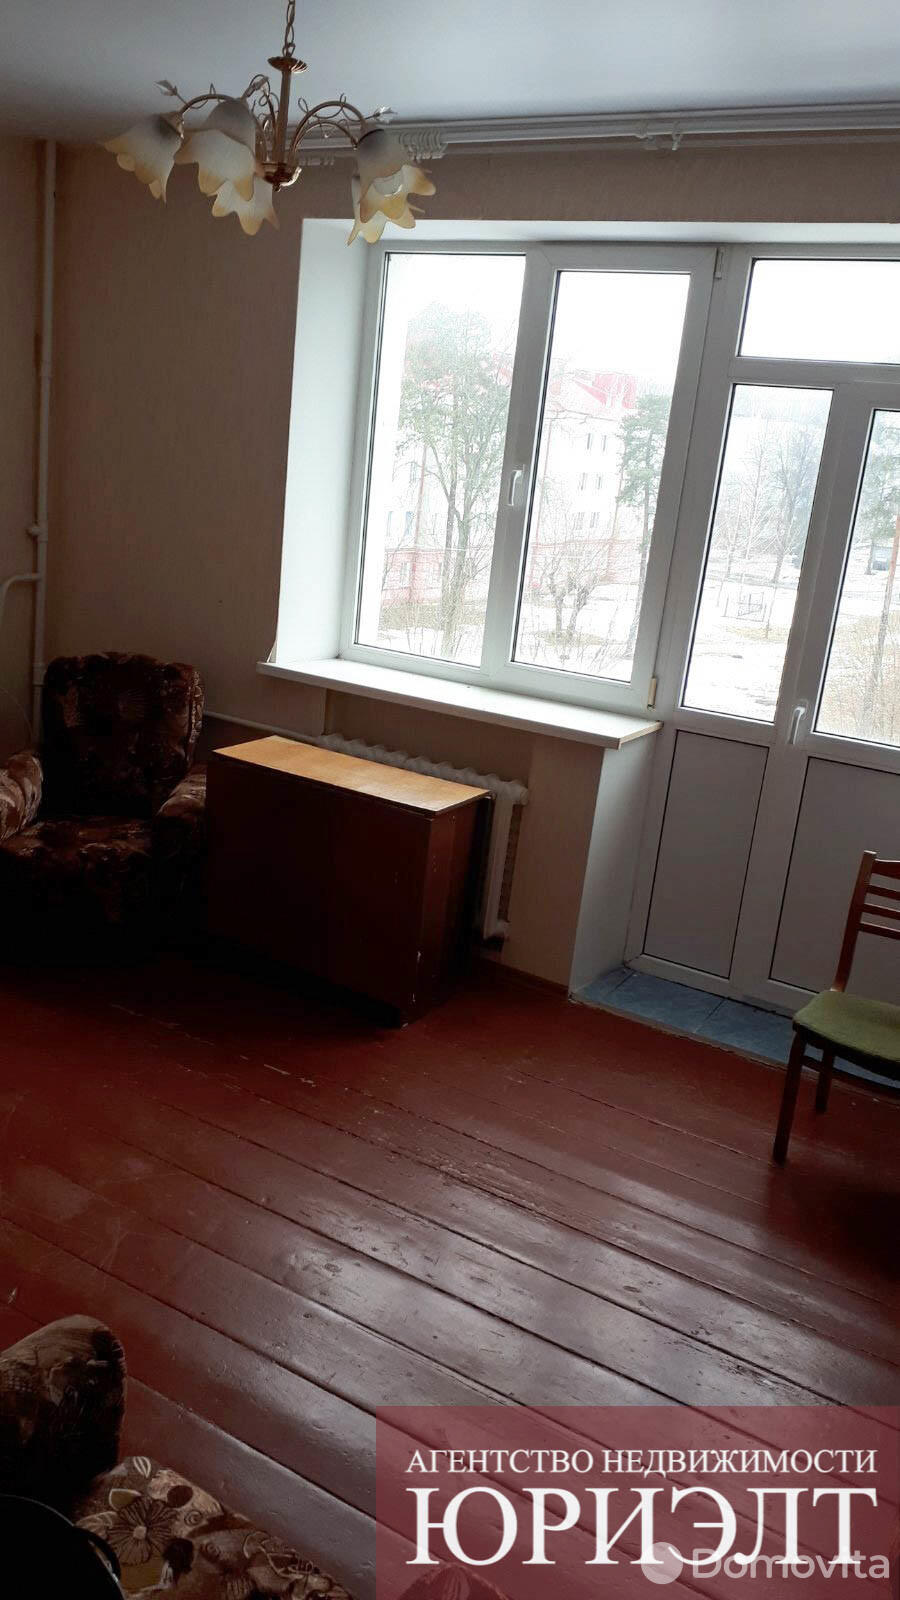 Купить комнату в Борисове, ул. Серебренникова, д. 2, цена 6200 USD, код 6162 - фото 2